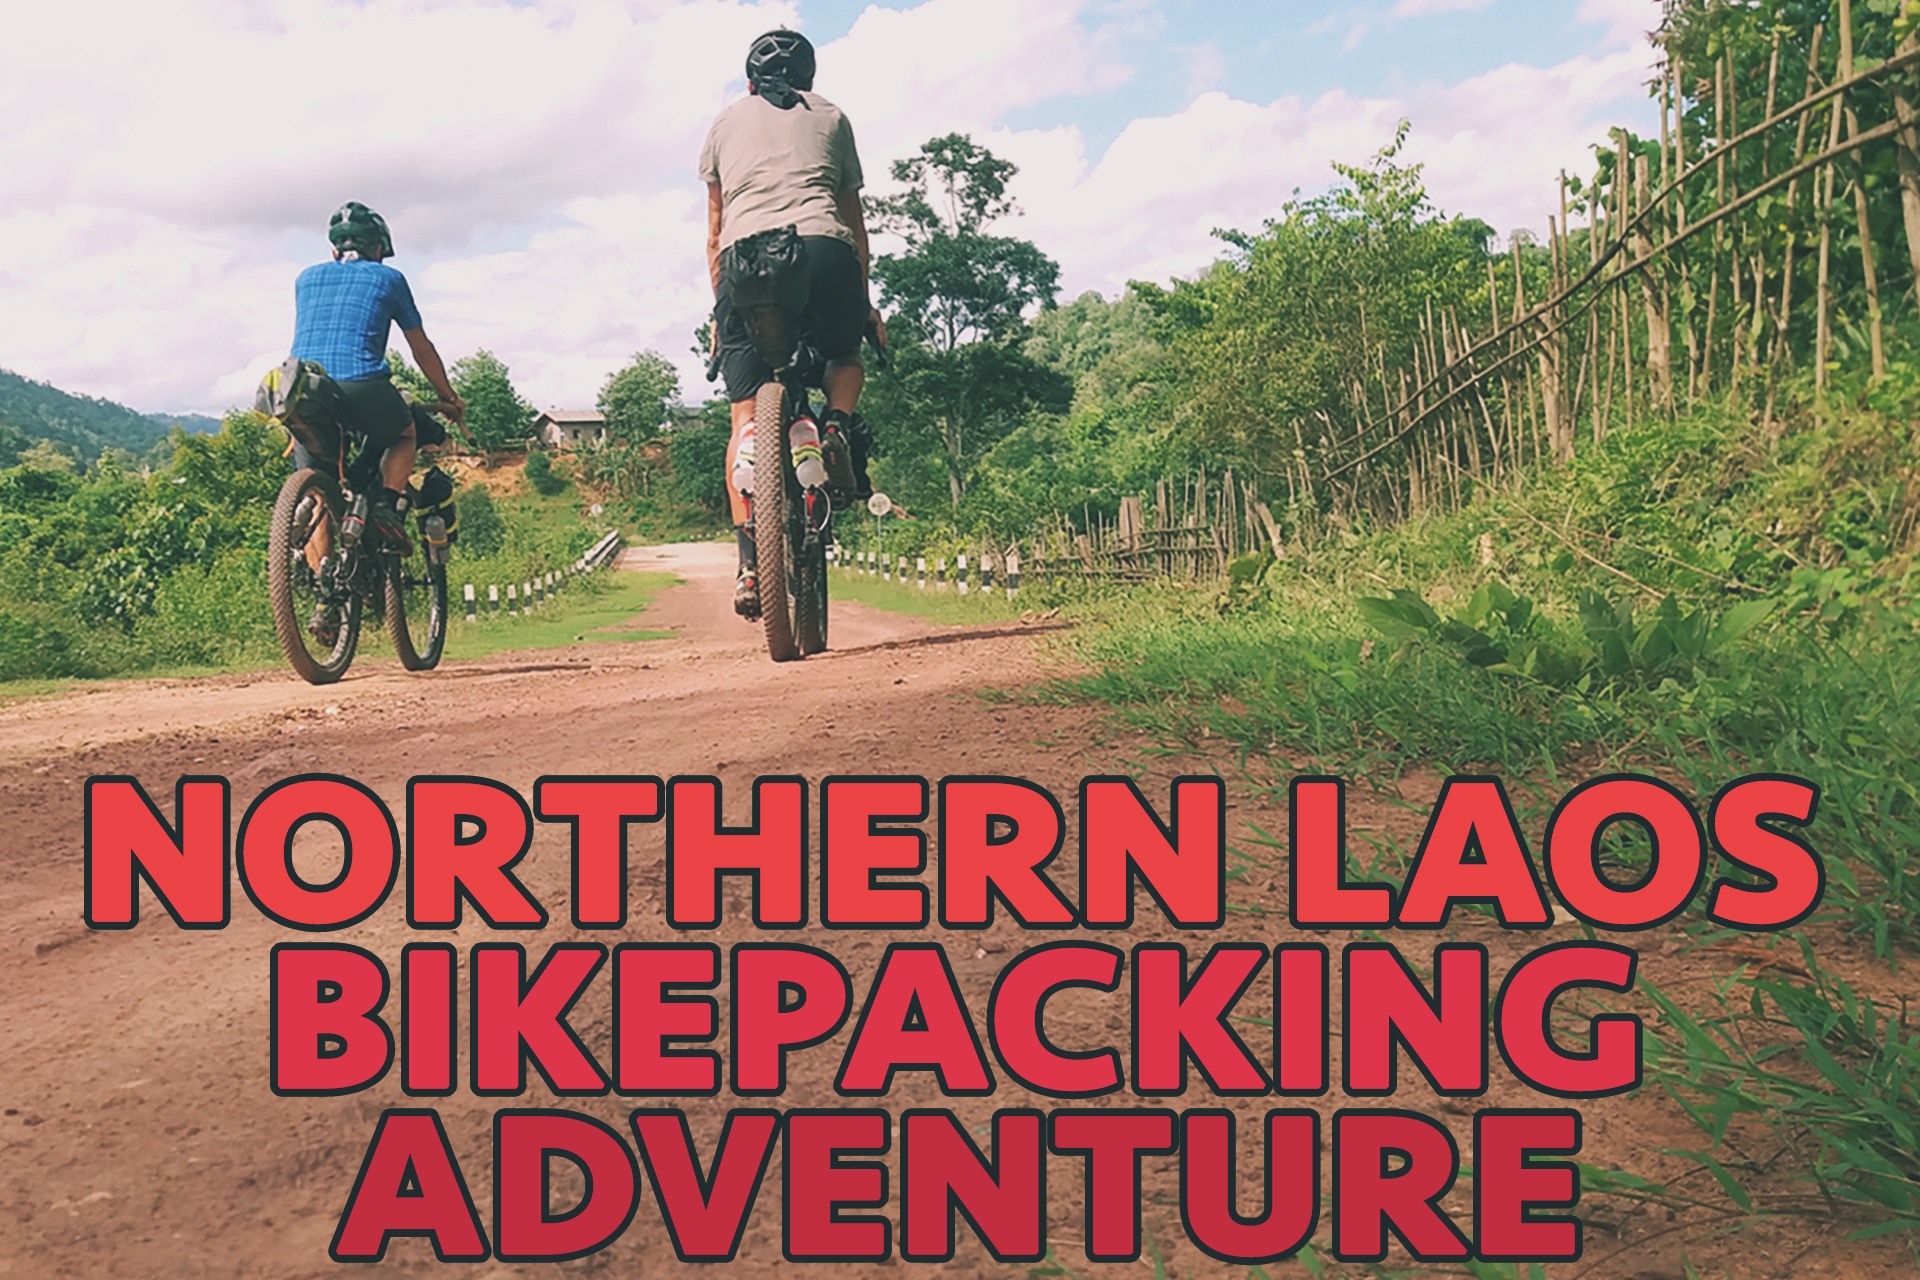 Laos Bikepacking